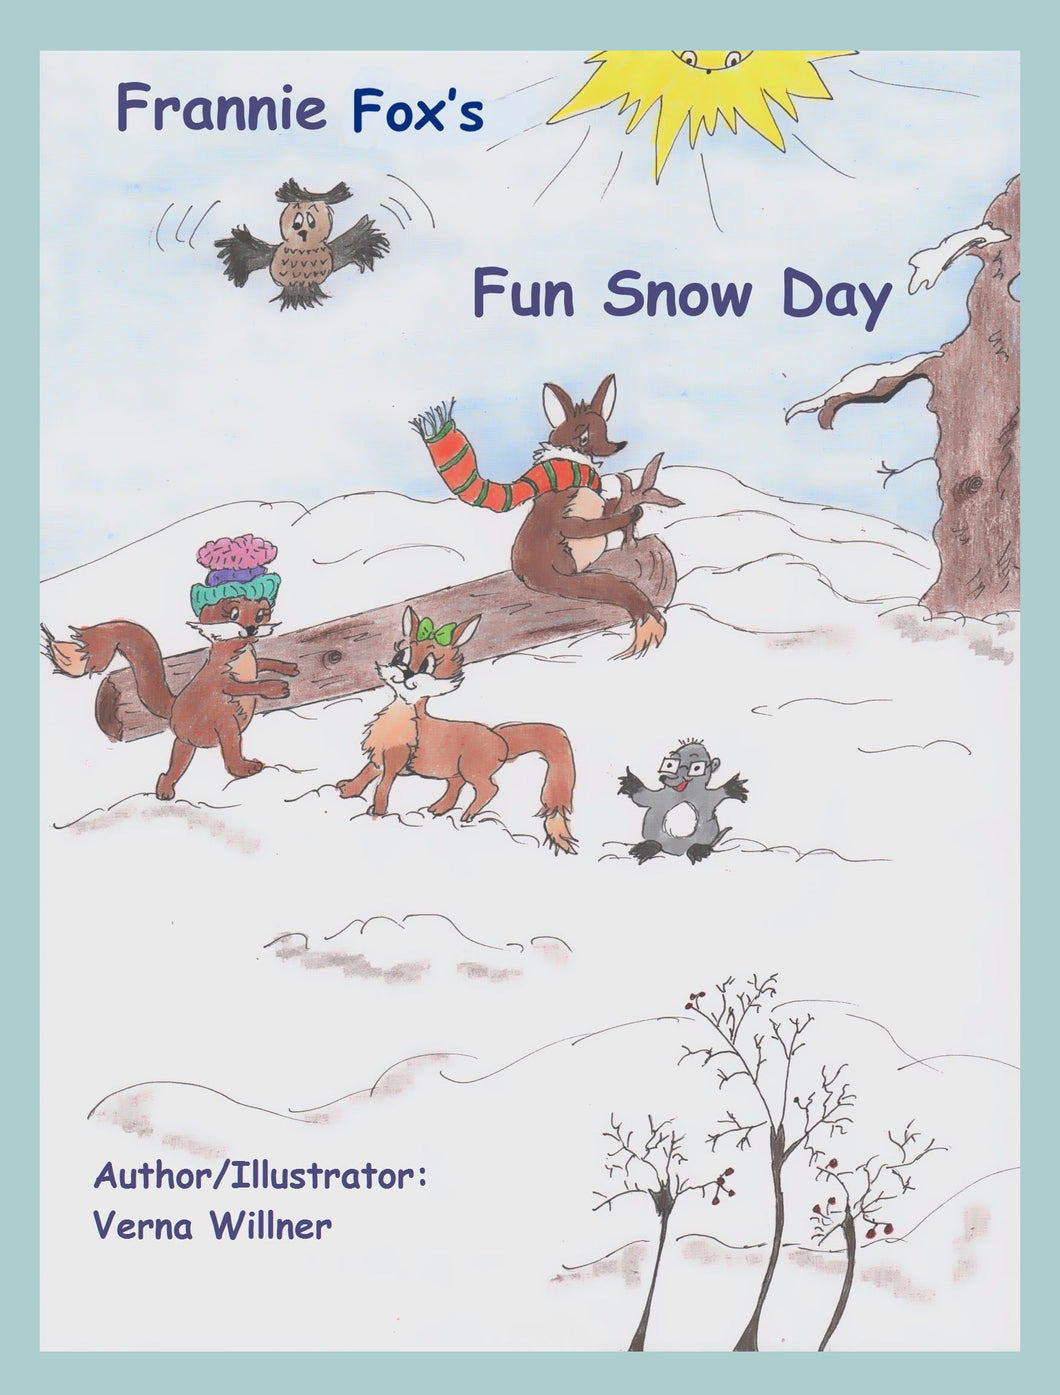 Frannie Fox's Fun Snow Day